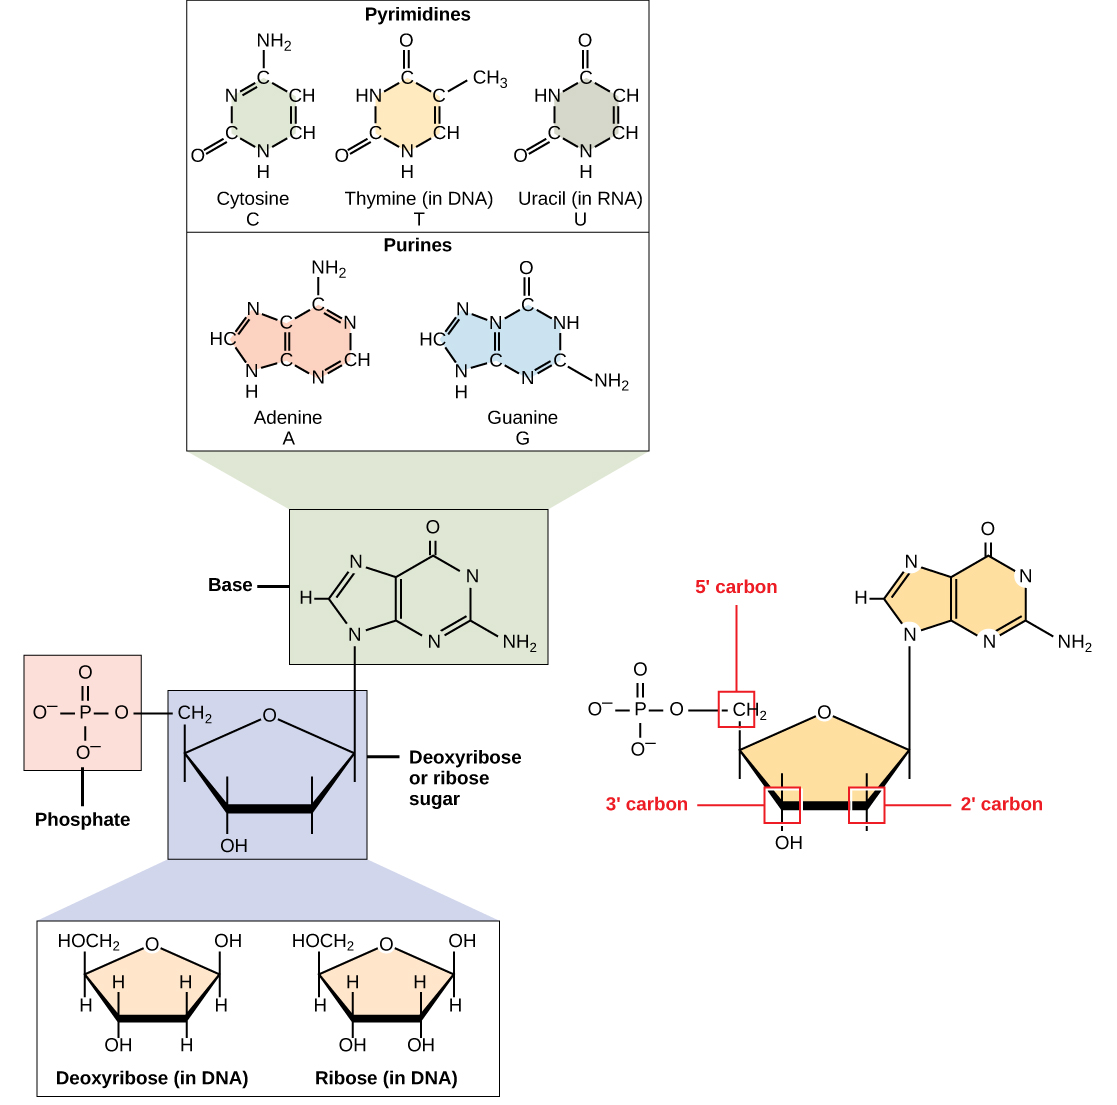 La structure moléculaire d'un nucléotide est montrée. Le noyau du nucléotide est un pentose dont les résidus de carbone sont numérotés d'un nombre premier à cinq nombres premiers. La base est fixée au carbone principal et le phosphate est attaché aux cinq carbones principaux. Deux types de pentose se trouvent dans les nucléotides : le ribose et le désoxyribose. Le désoxyribose possède un H au lieu de OH aux deux positions premières. Cinq types de bases se trouvent dans les nucléotides. Deux d'entre elles, l'adénine et la guanine, sont des bases puriques avec deux anneaux fusionnés. Les trois autres, la cytosine, la thymine et l'uracile, possèdent un cycle à six chaînons.